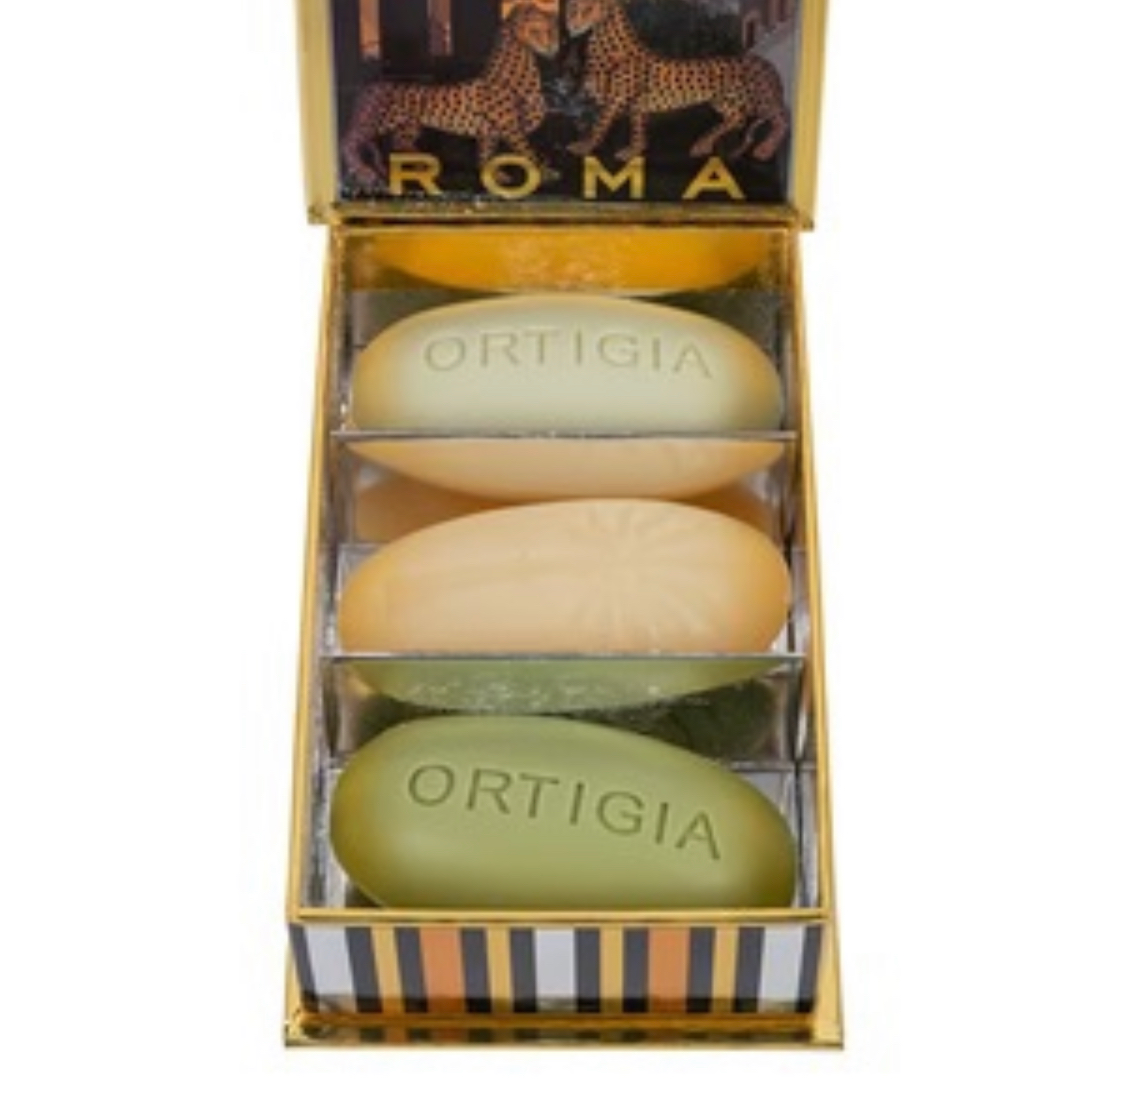 Roma City Box Soap